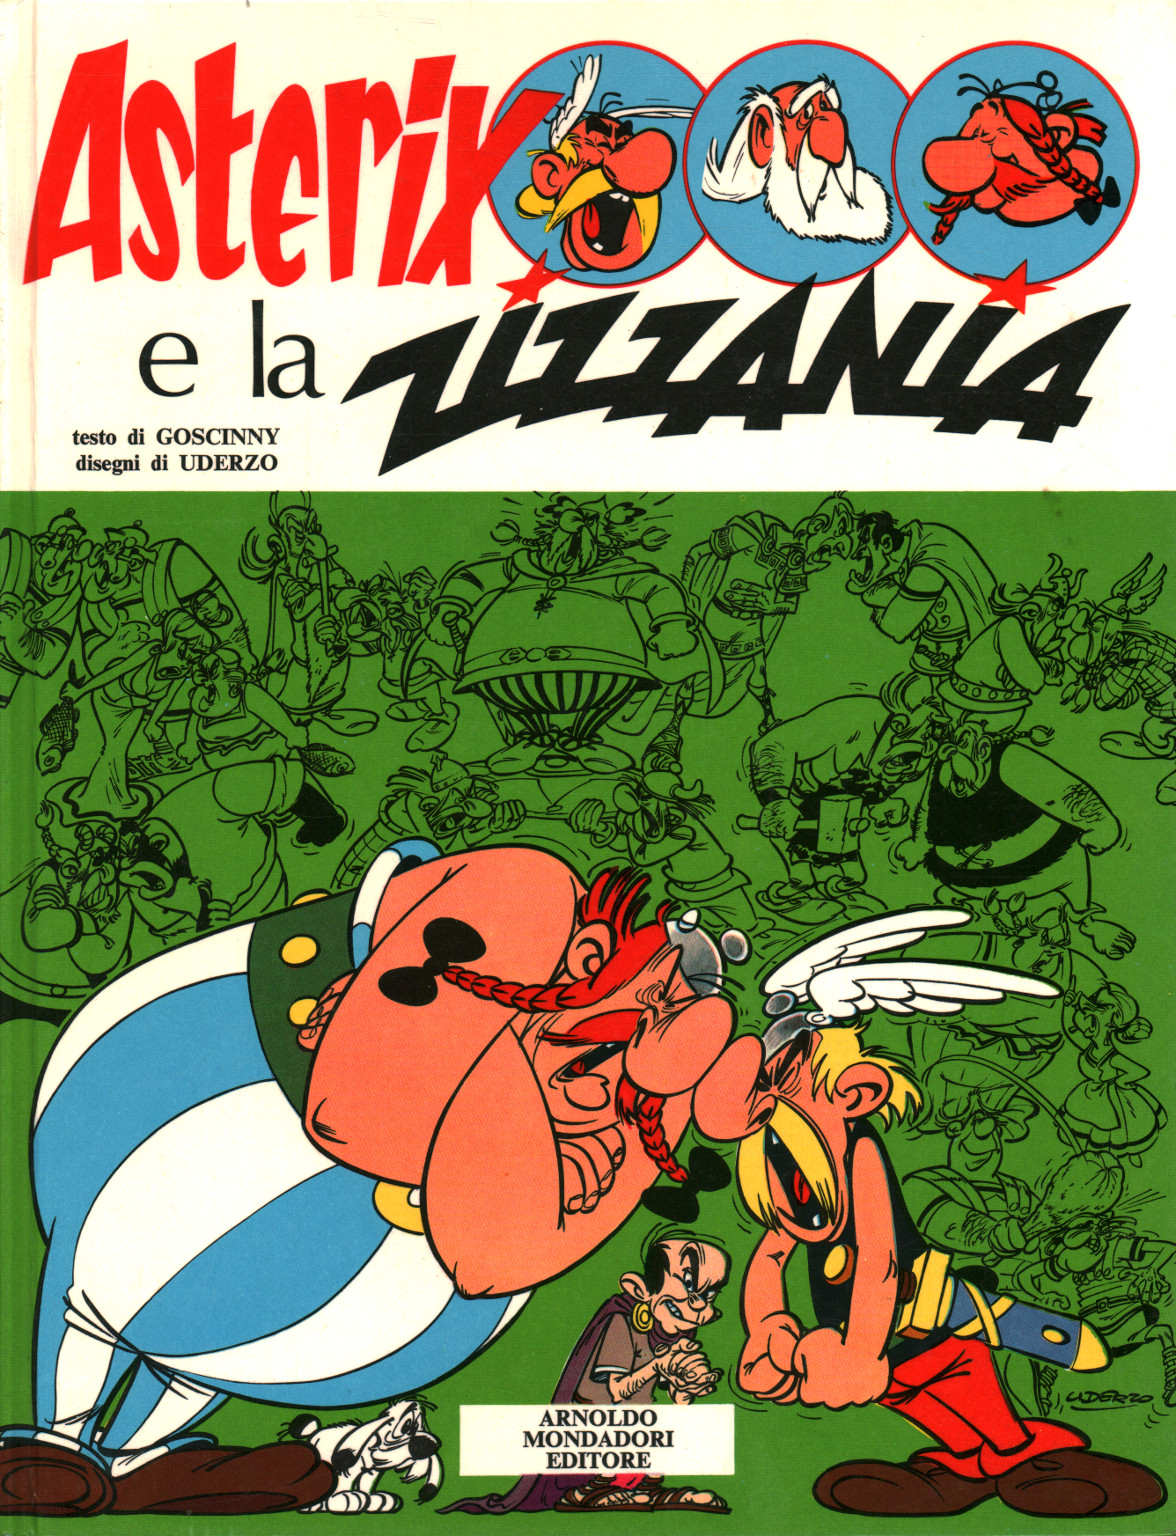 Asterix und das Unkraut, s.a.